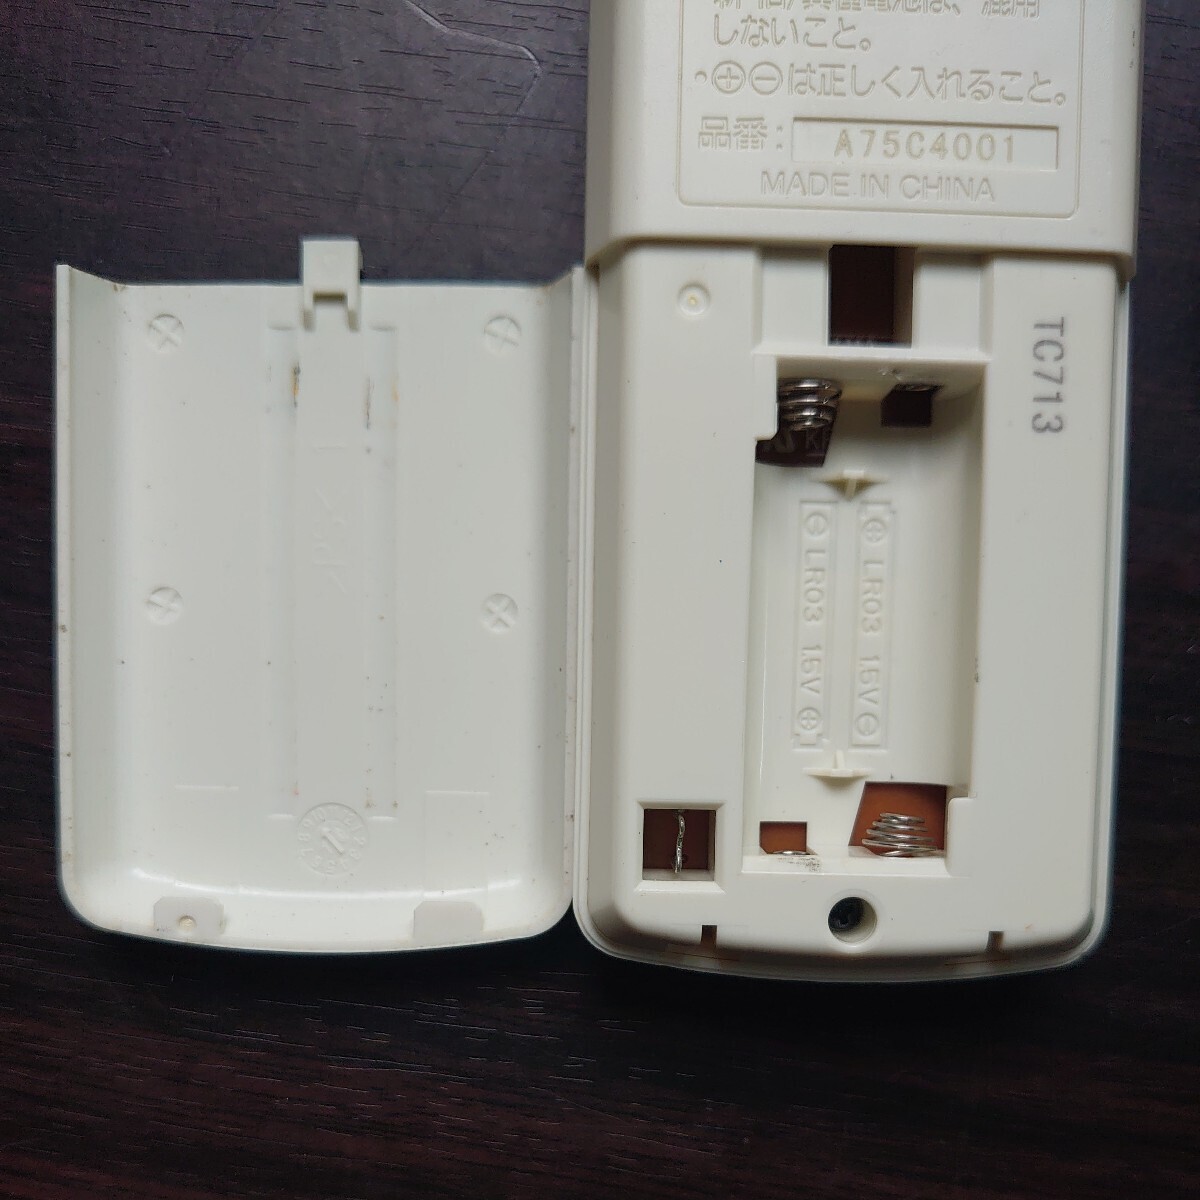 Panasonic パナソニック エアコン リモコン a75c4001 中古品 返品不可の画像3